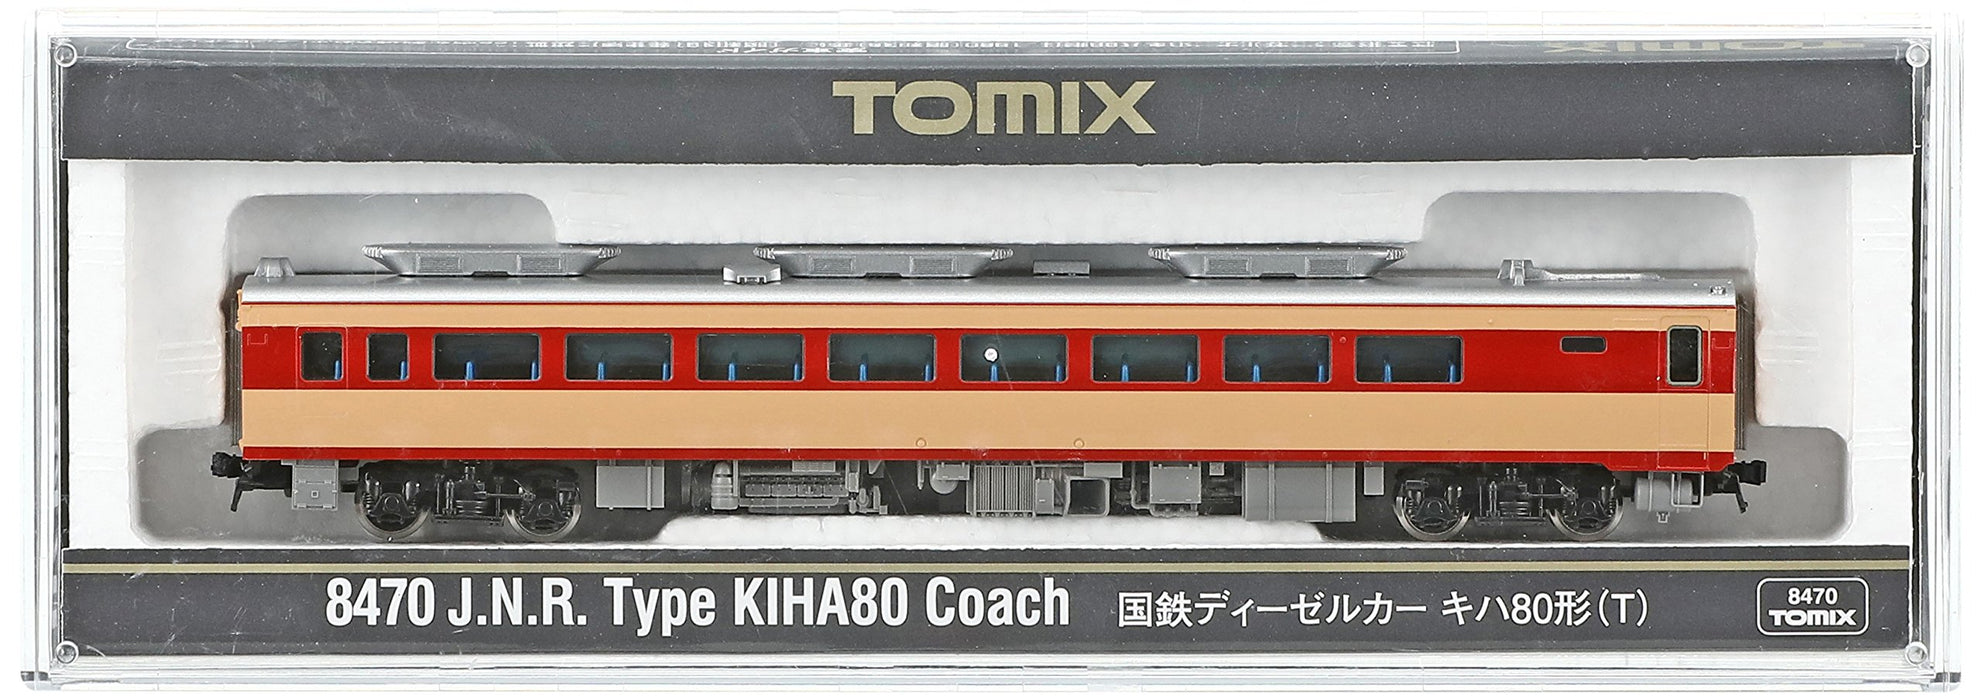 Tomytec Tomix N Gauge Kiha 80 T 8470 Diesel Railway Model Car